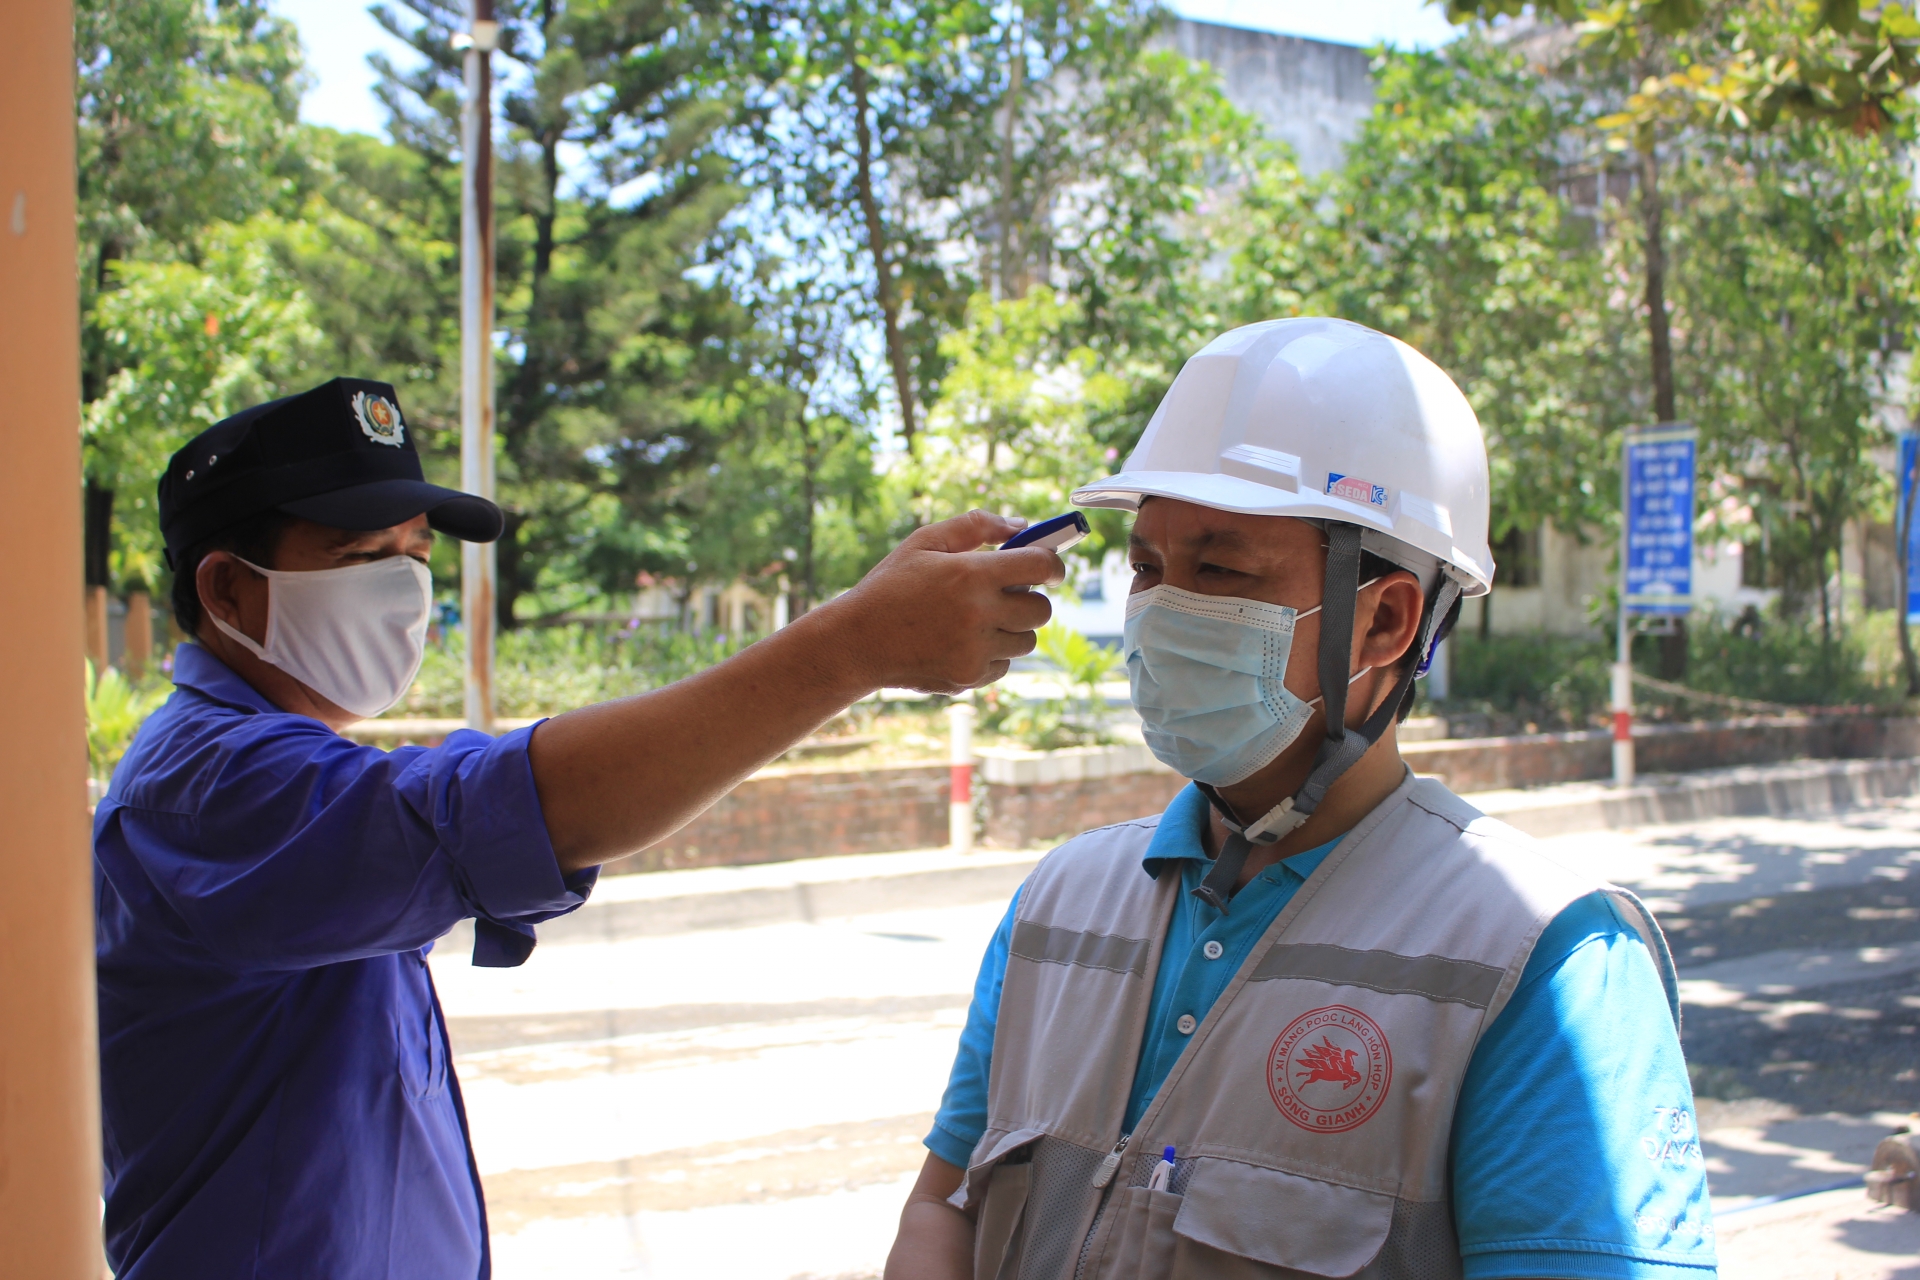 An toàn cho người lao động Đà Nẵng trở lại làm việc tại các khu công nghiệp